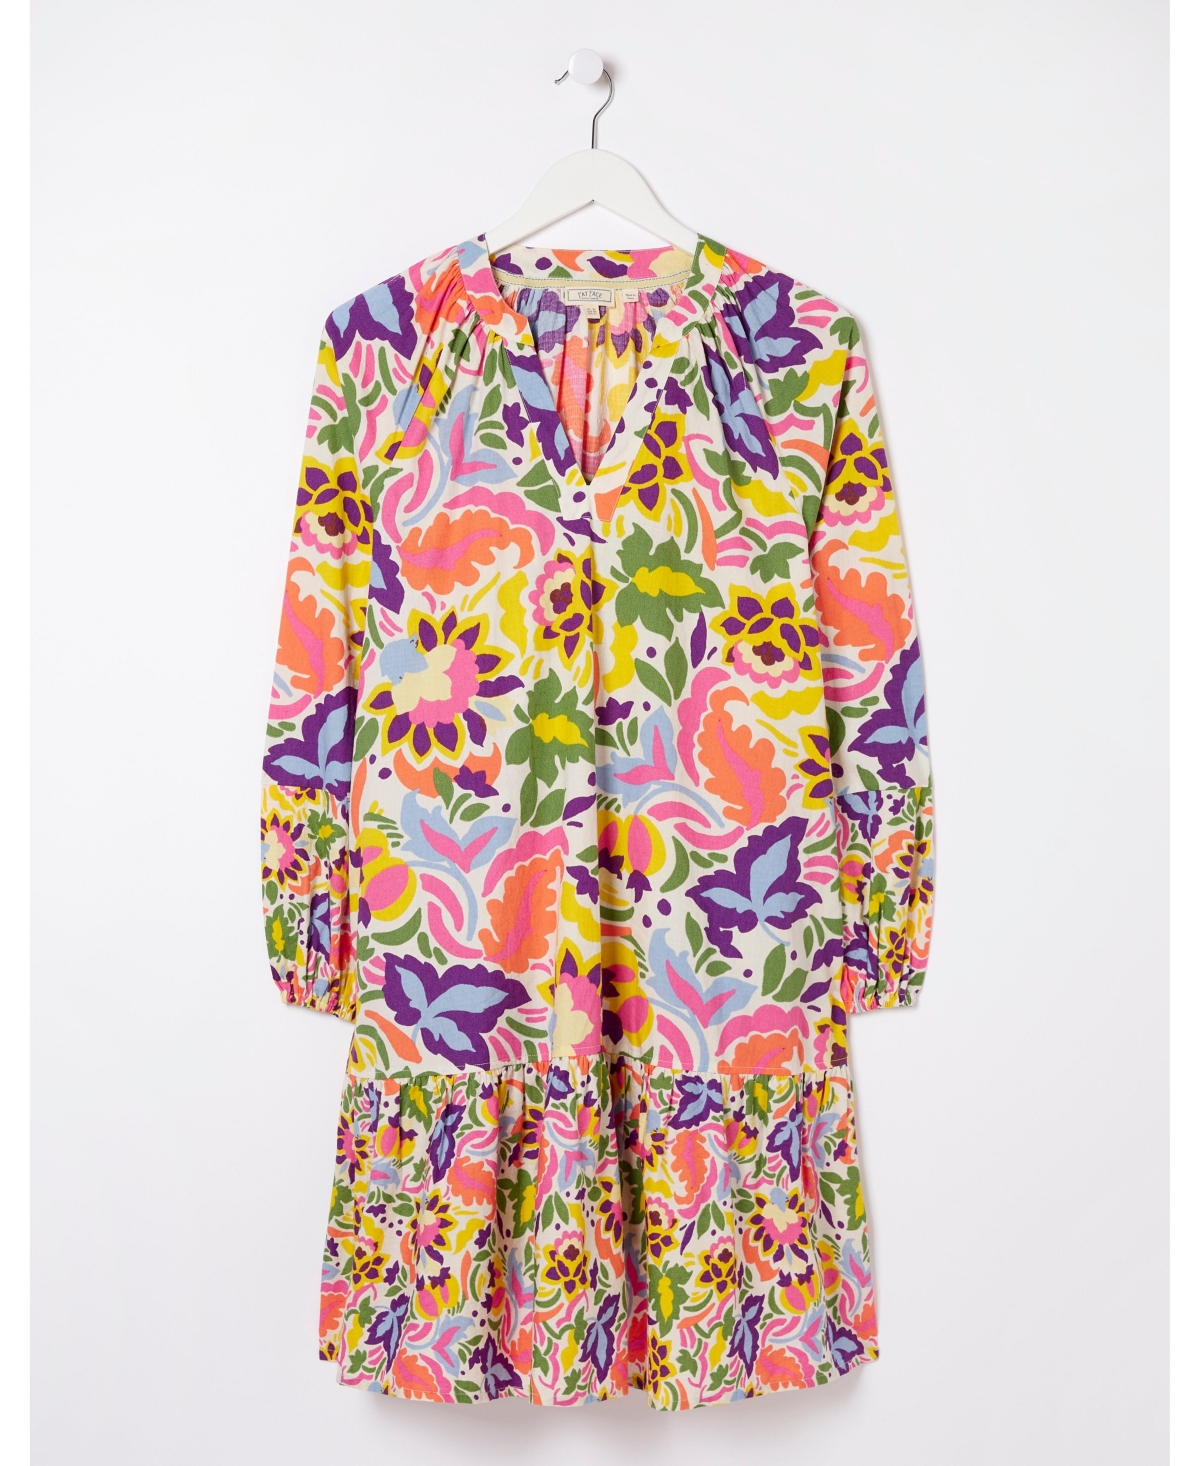 Women's Plus Size Amy Art Floral Tunic Dress - Multi color